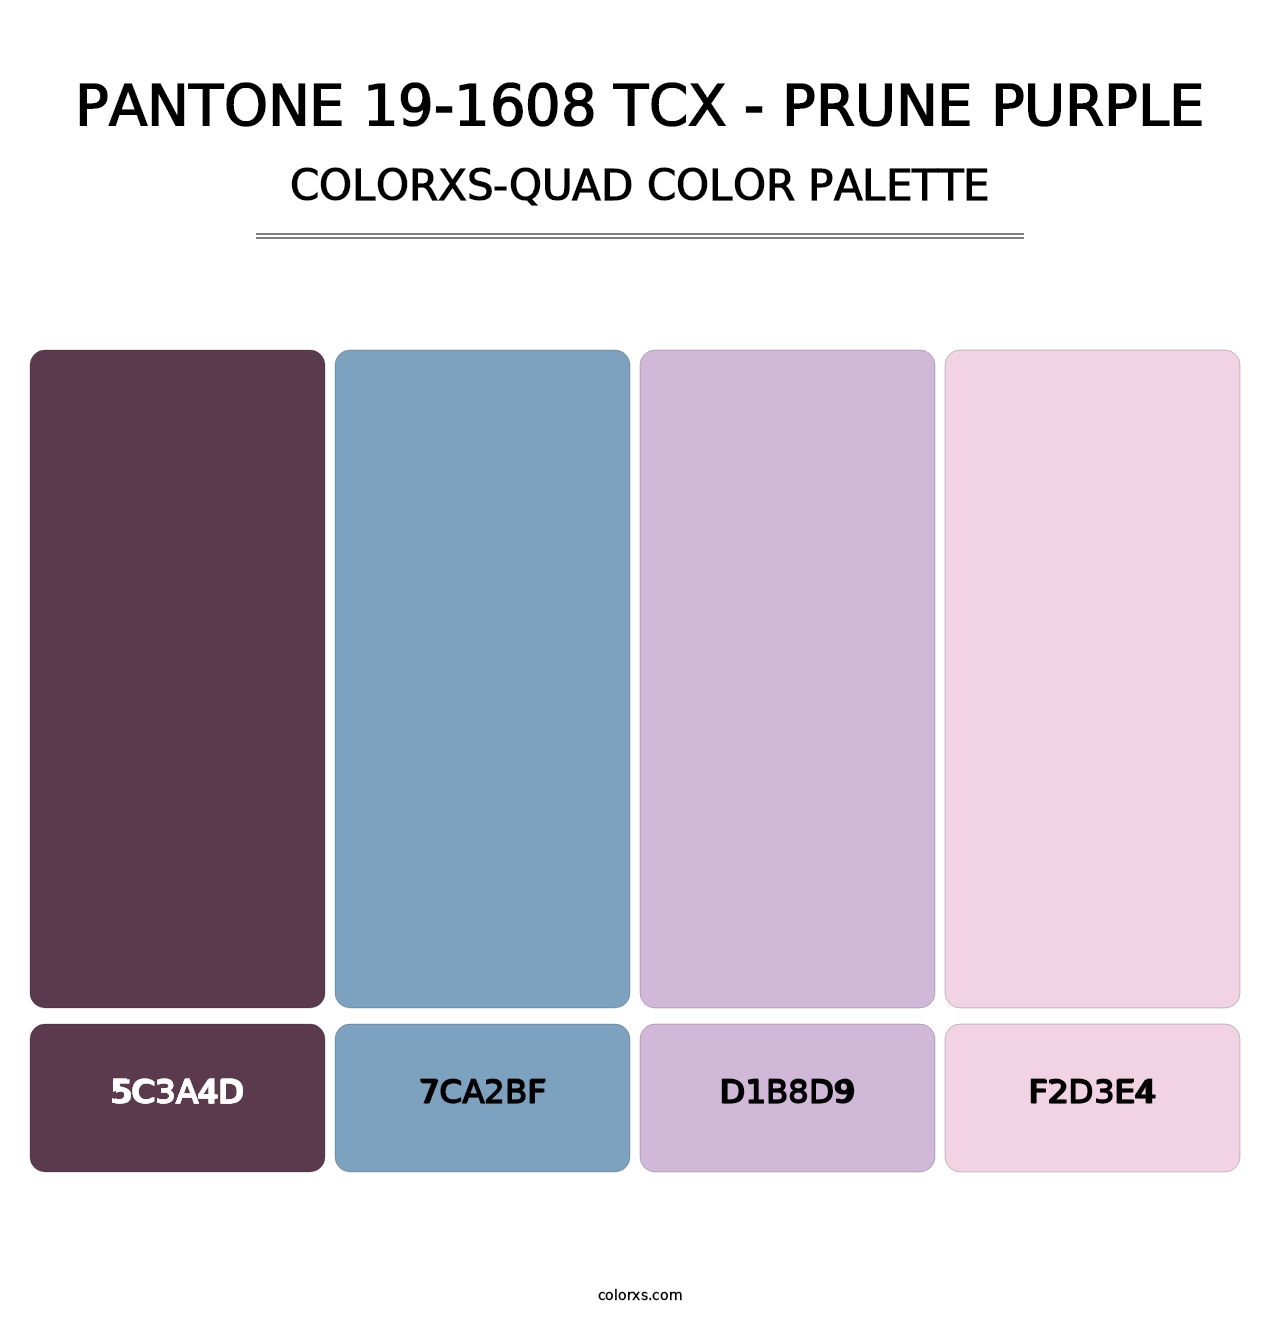 PANTONE 19-1608 TCX - Prune Purple - Colorxs Quad Palette